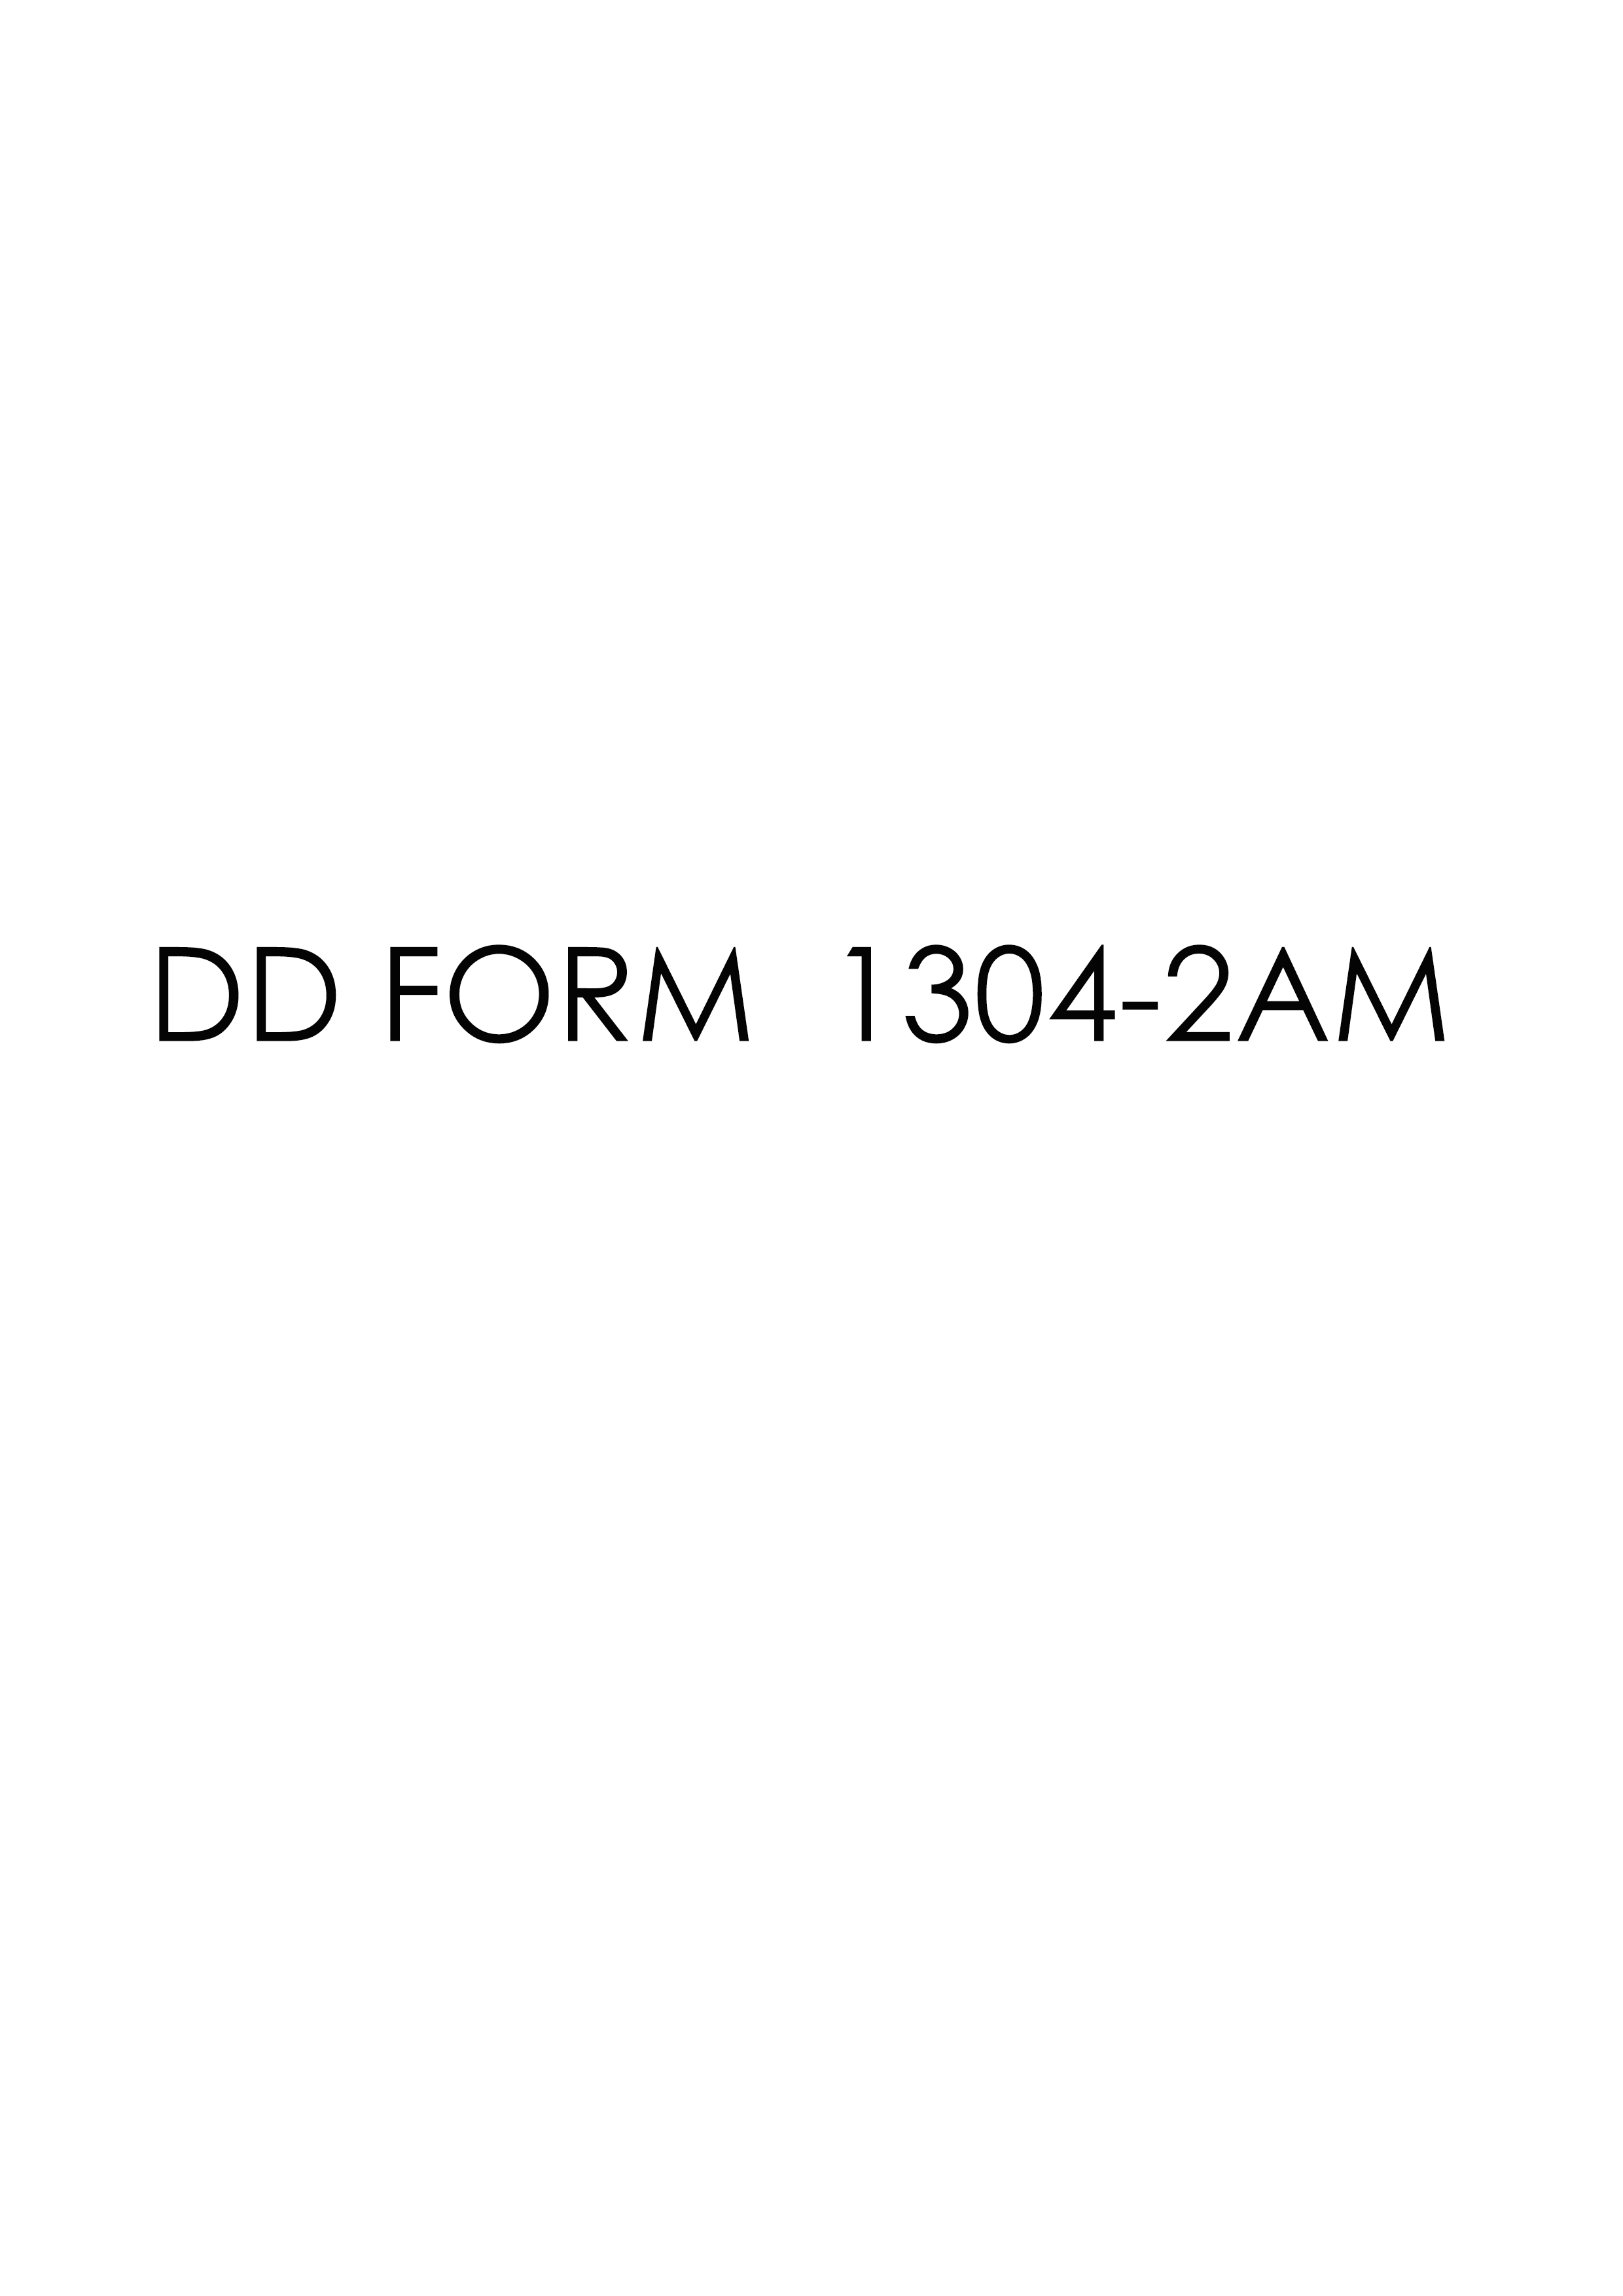 Download dd 1304-2AM Form